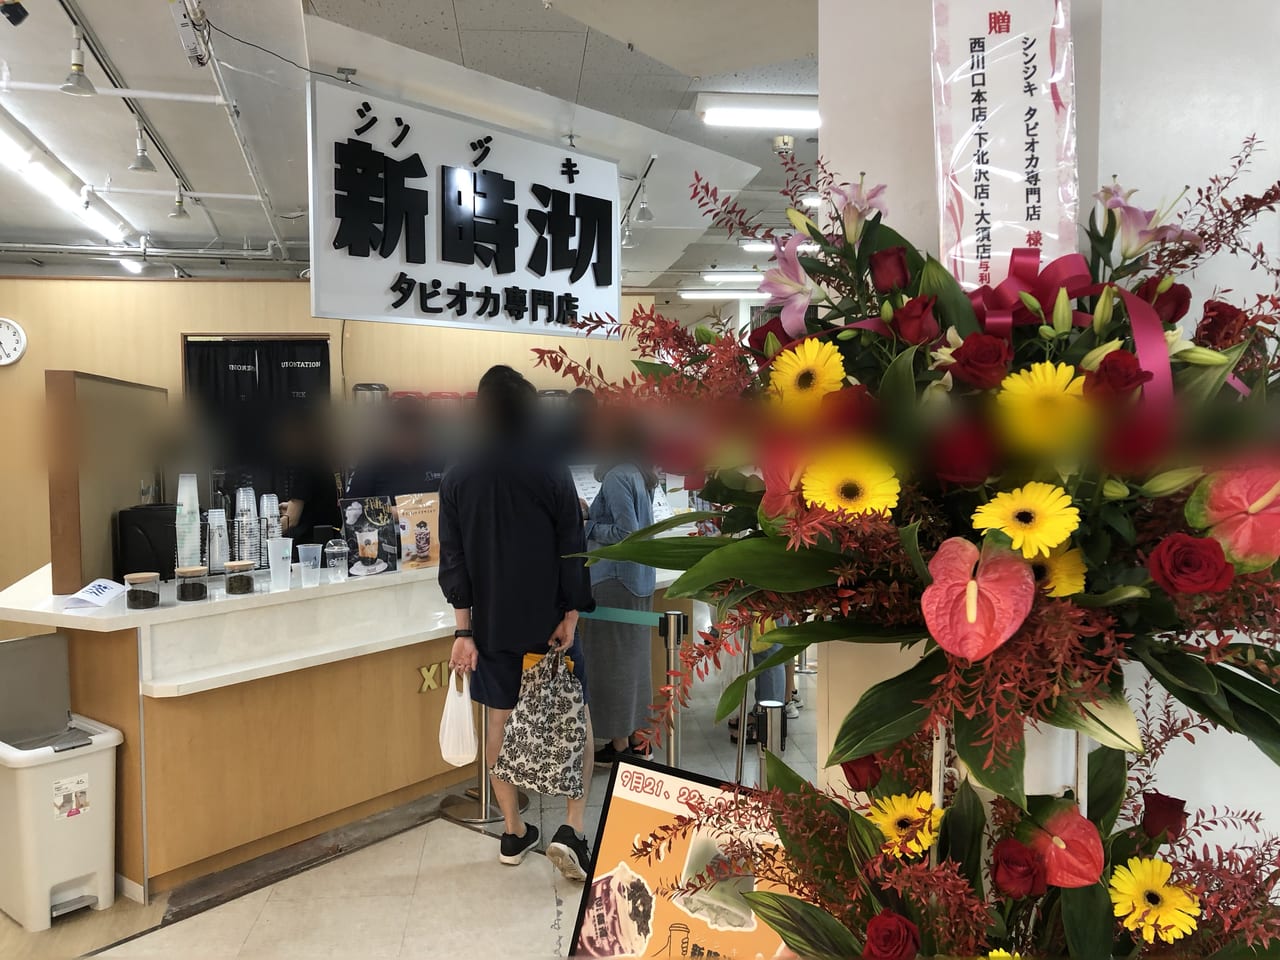 藤沢市 オープンから2年足らず タピオカ専門店 新時沏 シンジキ が閉店していました 号外net 藤沢市